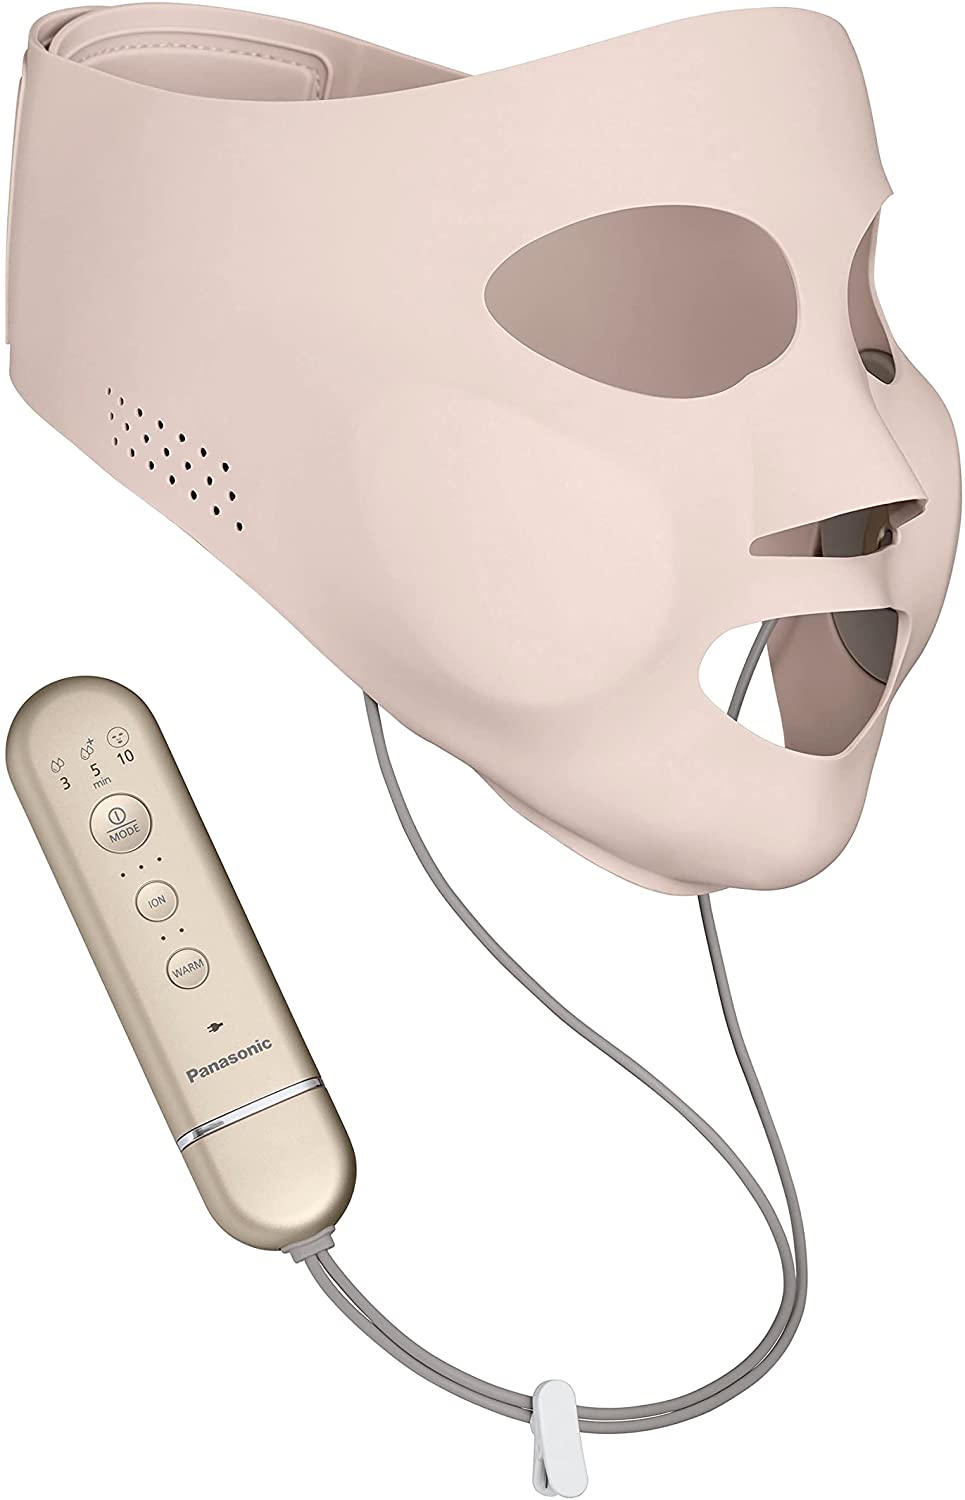 【数量限定】Panasonic パナソニック マスク型イオン美顔器 イオンブースト EH-SM50